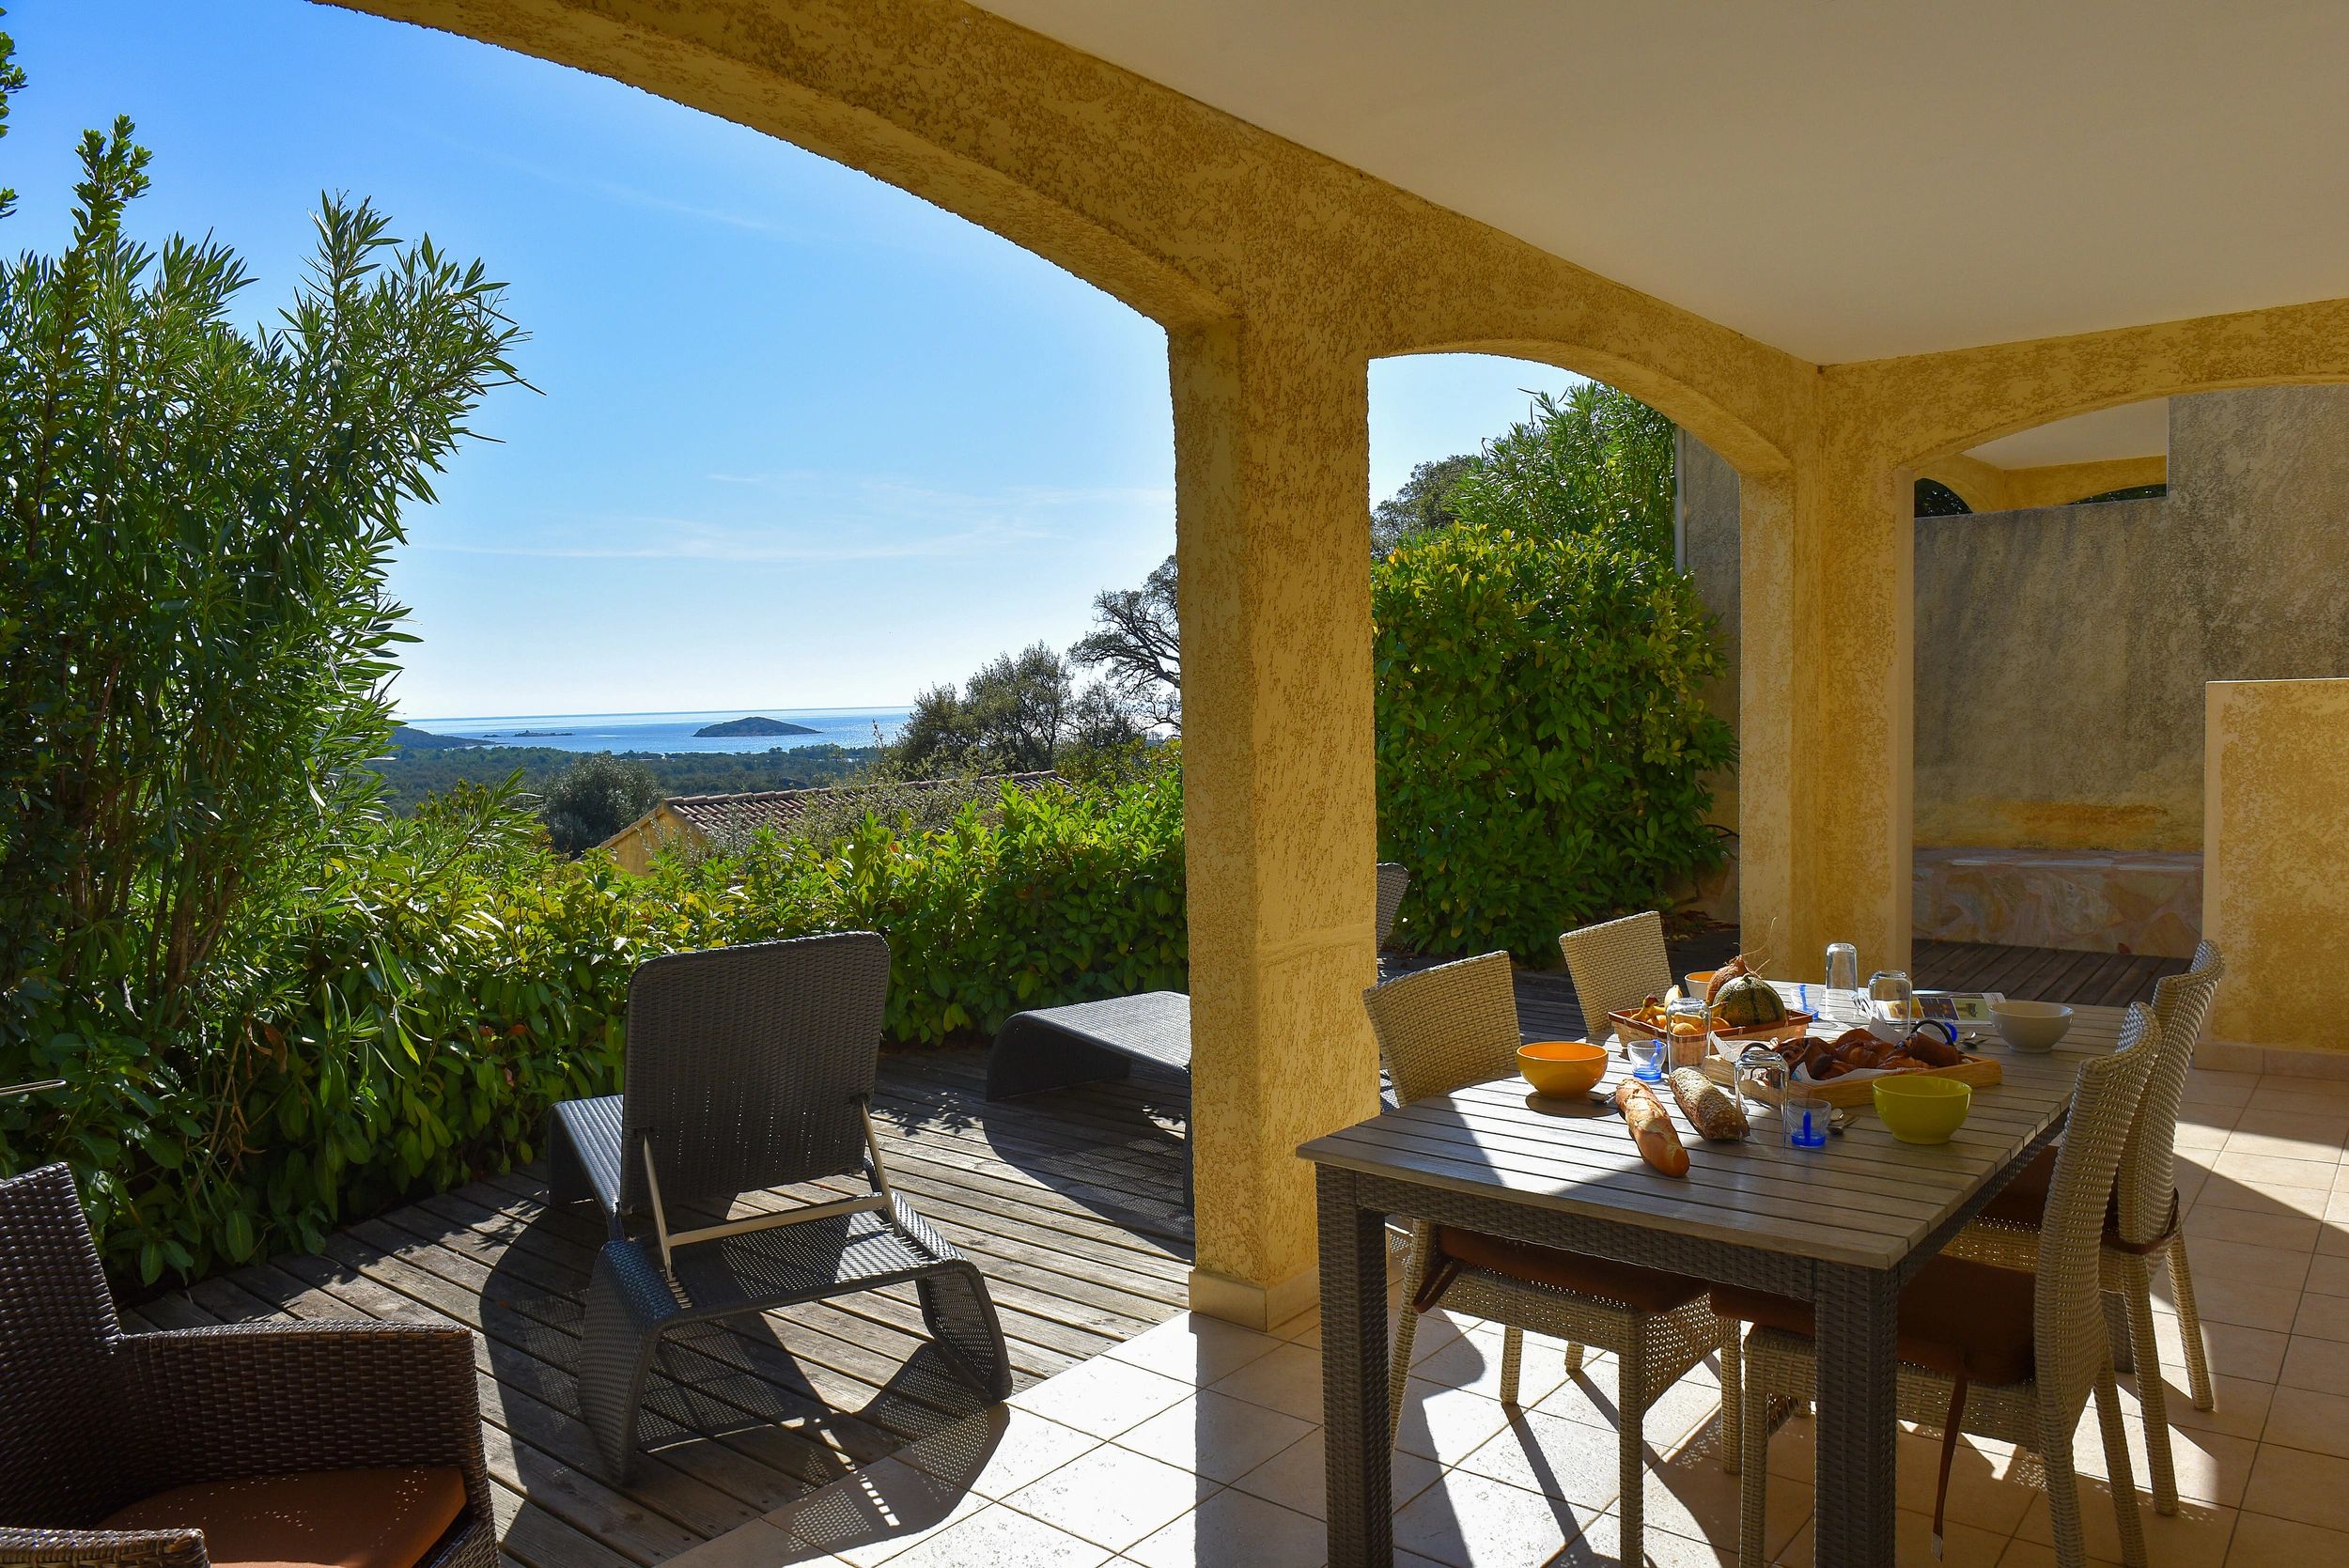 Villa haut de gamme dans le sud de la Corse avec vue mer